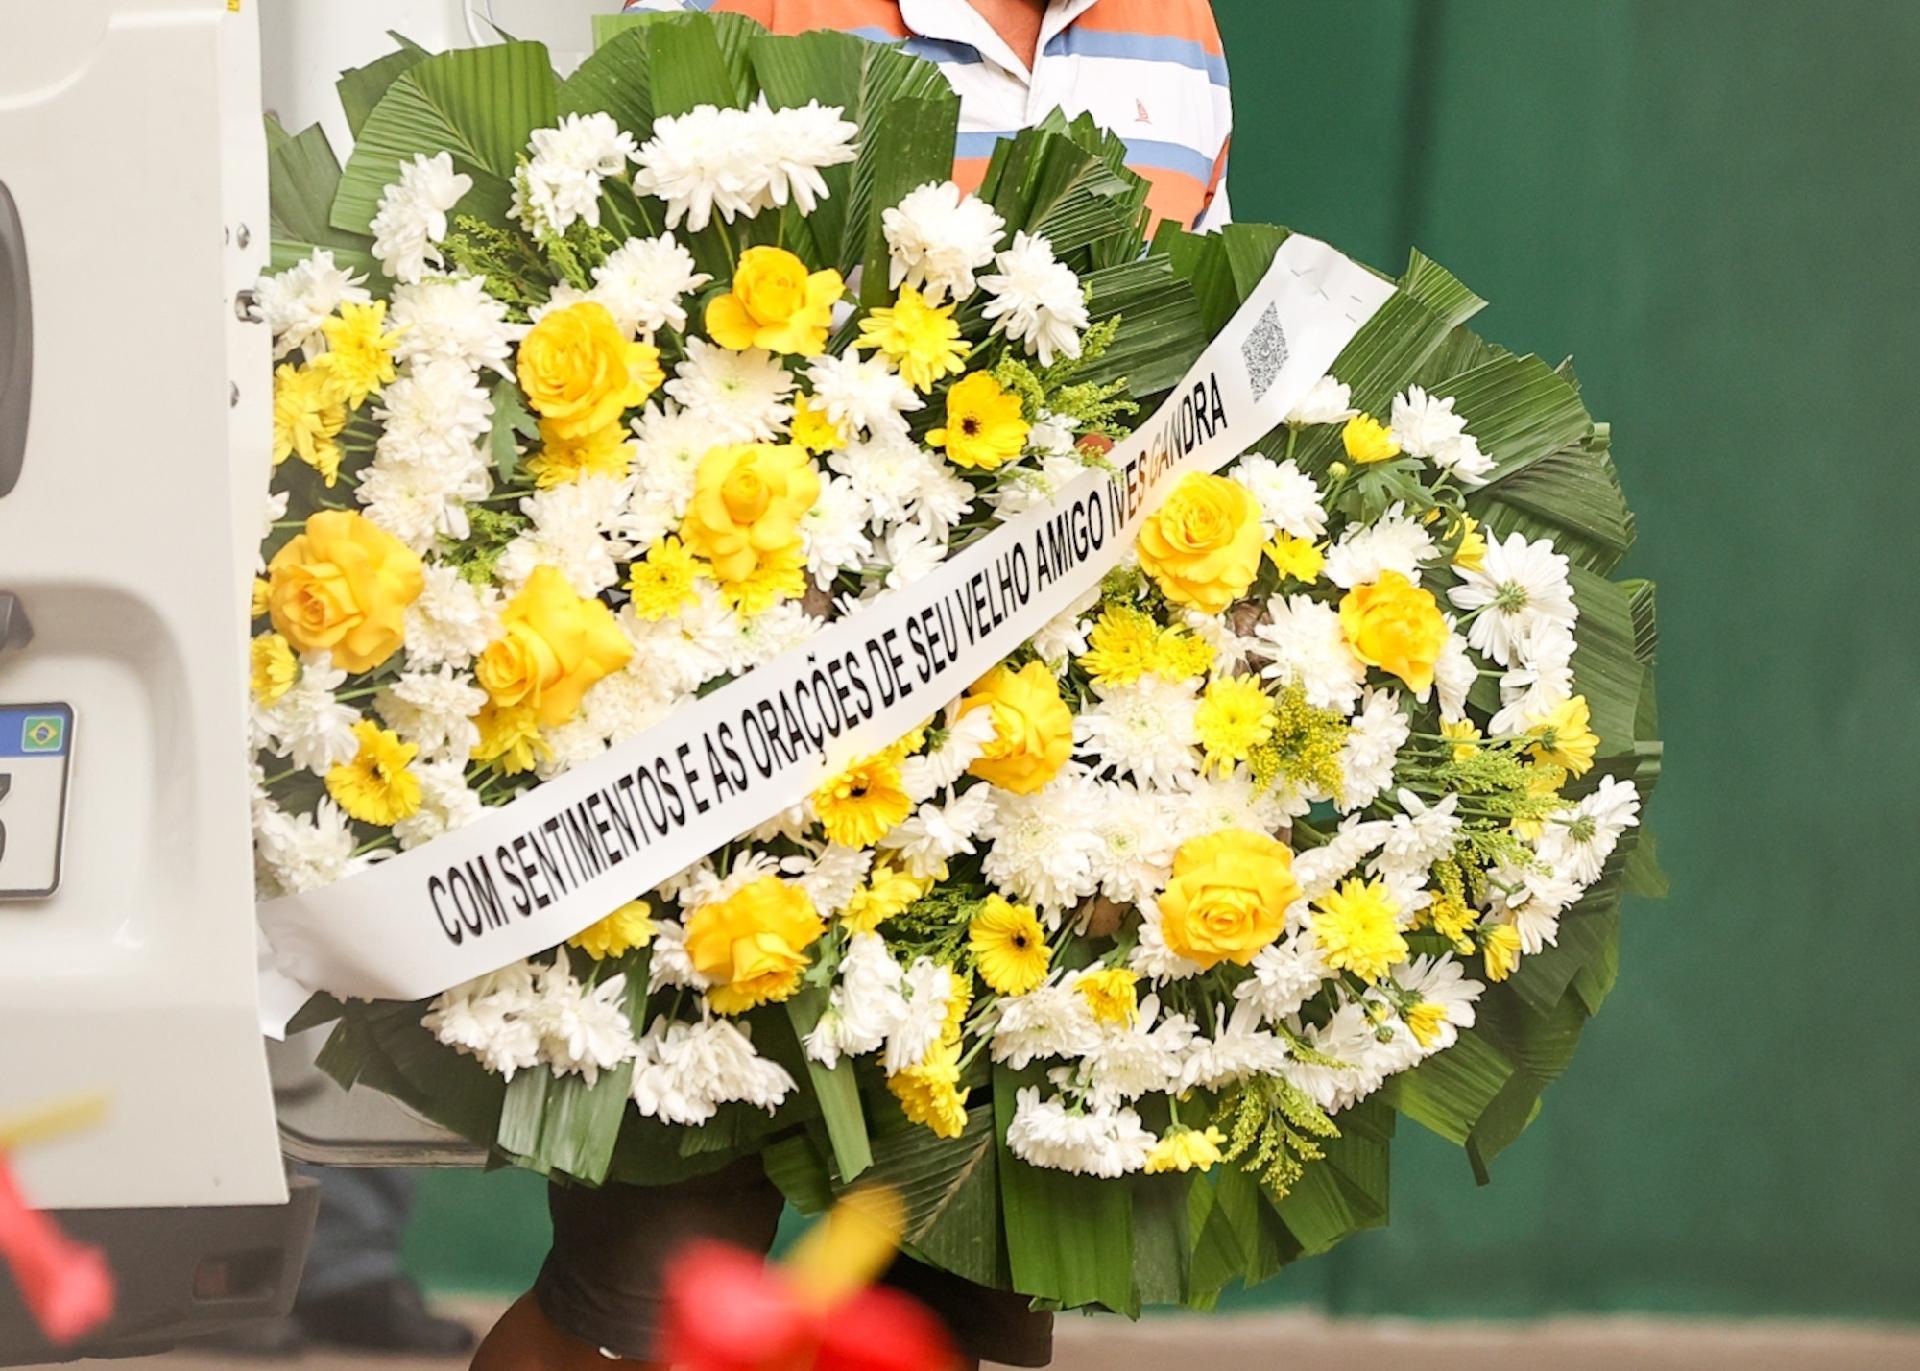 Coroa de flores enviada por Ives Gandra para o velrio de J Soares - Manuela Scarpa/Brazil News